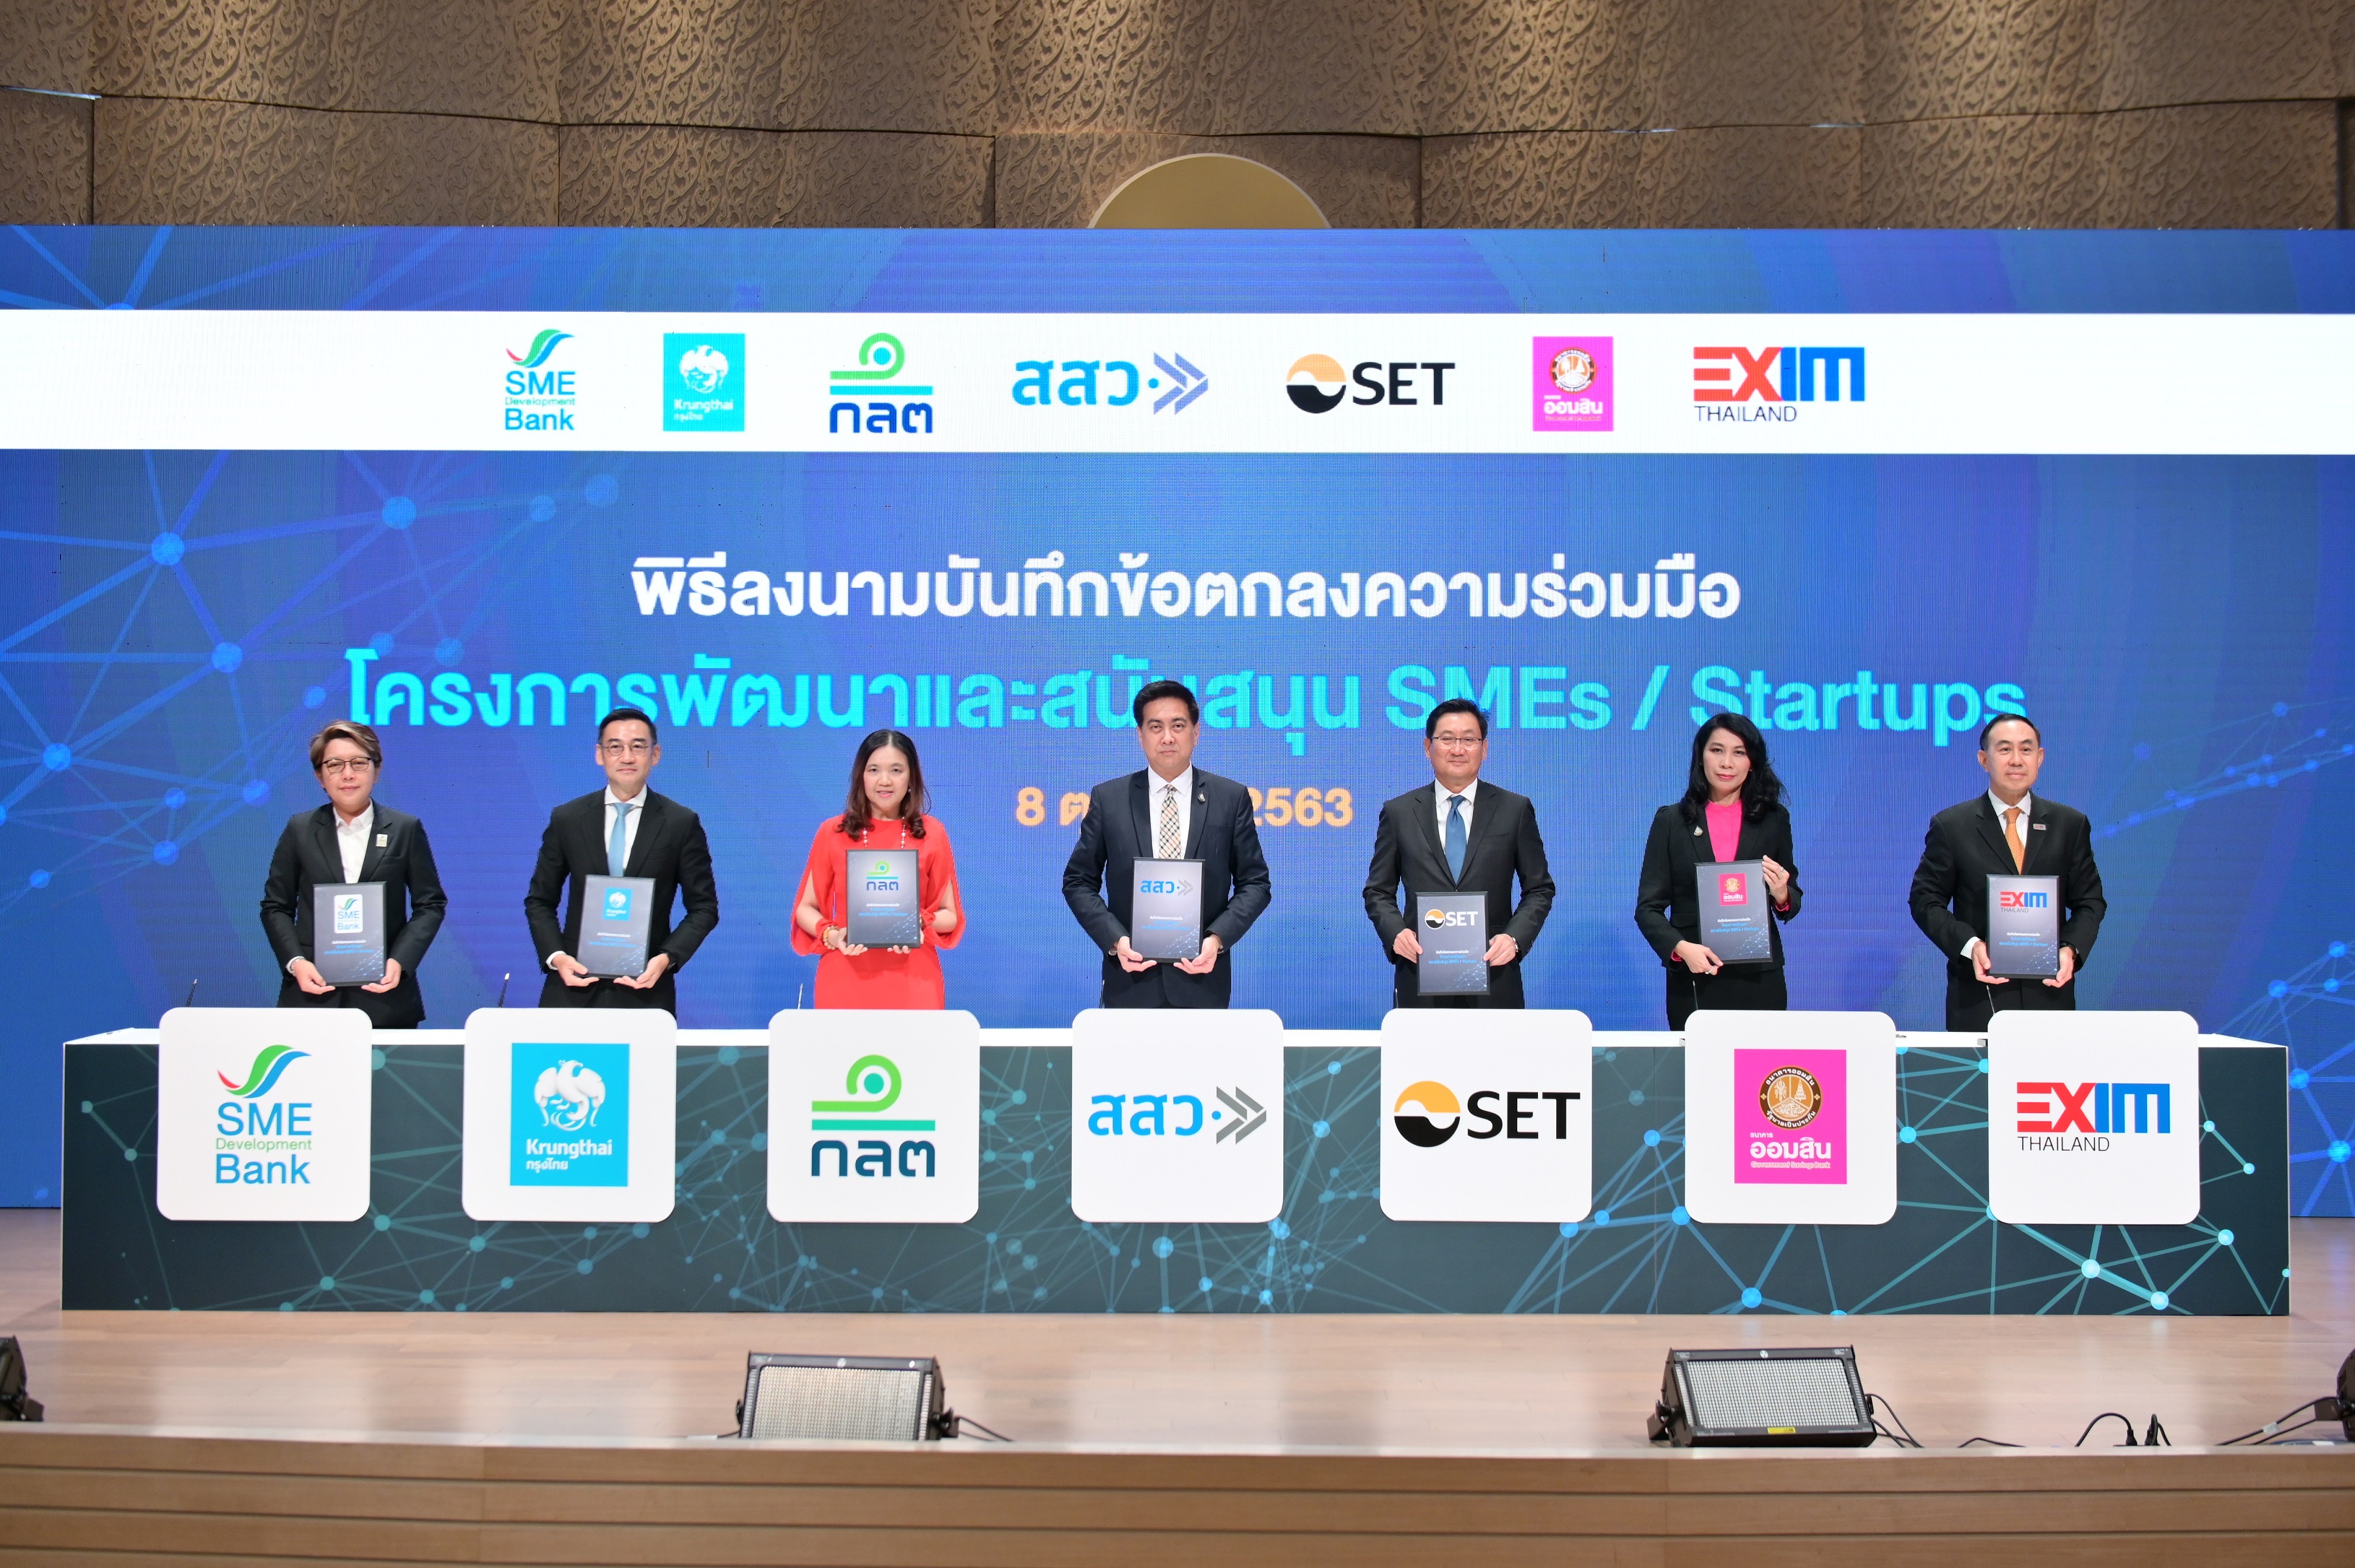 สสว. ลงนาม MOU ก.ล.ต. ตลาดหลักทรัพย์ฯ หนุนSMEs และ Startups ผ่านตลาดทุนไทย